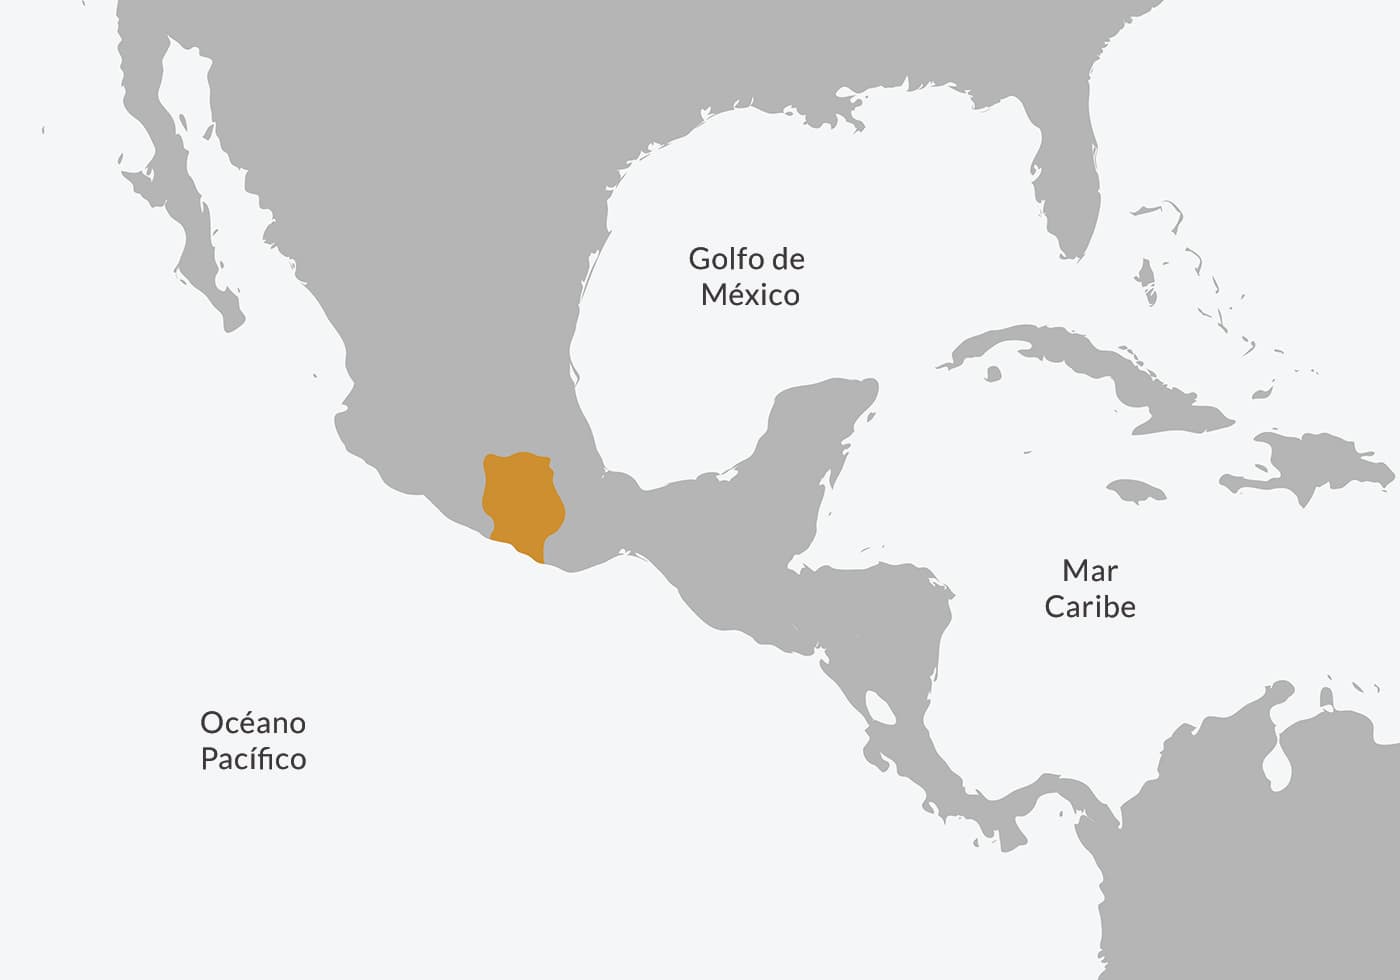 Ubicación en el mapa de la civilización mixteca.